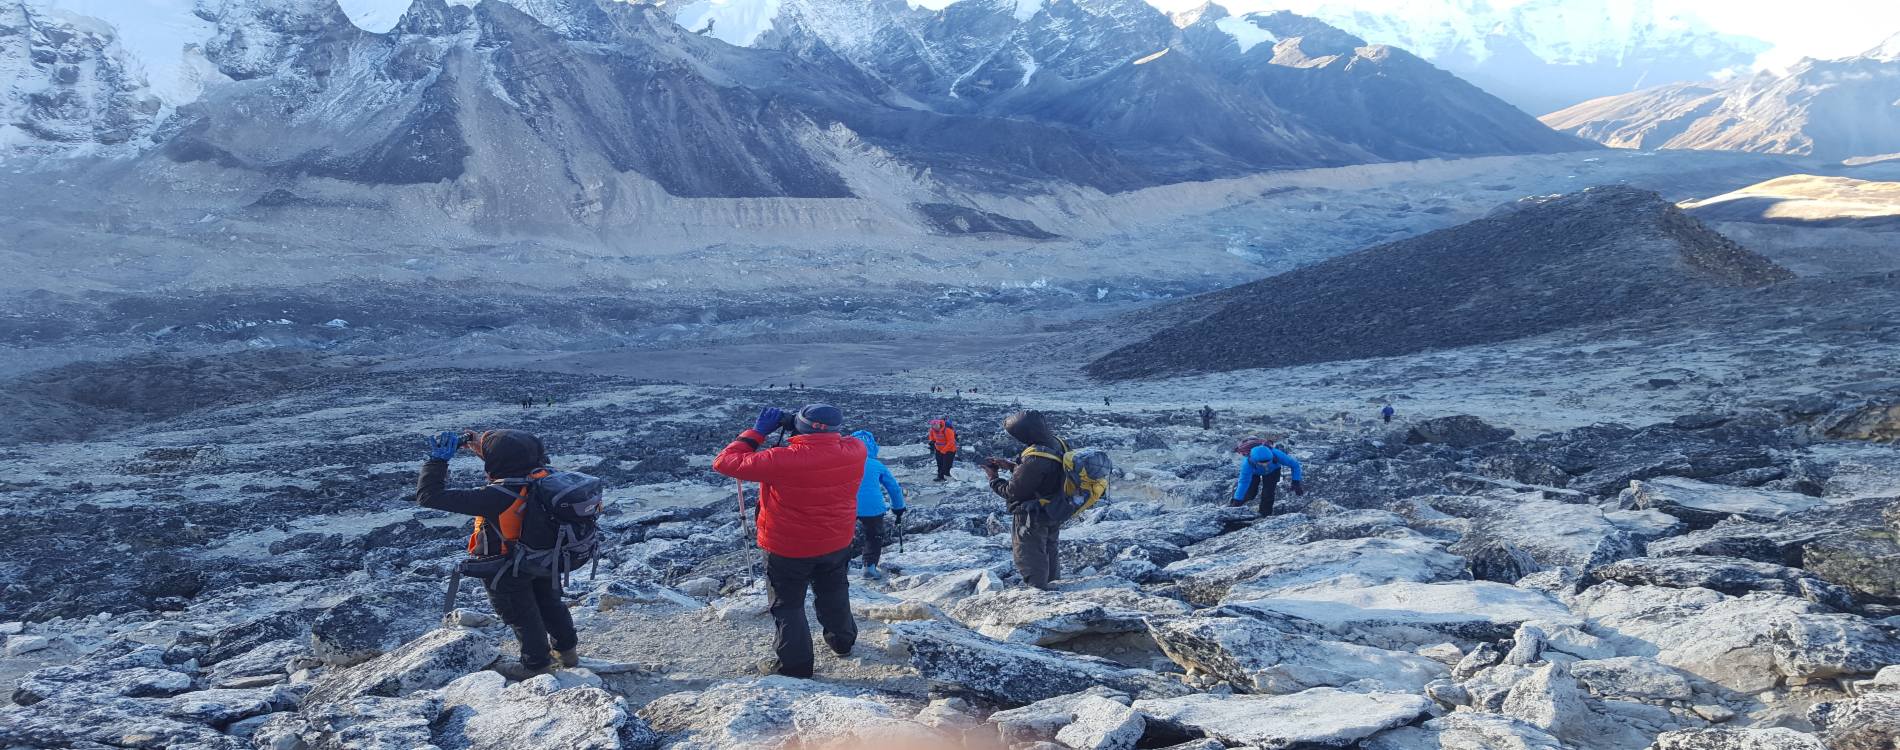 Solo treks banned in nepal